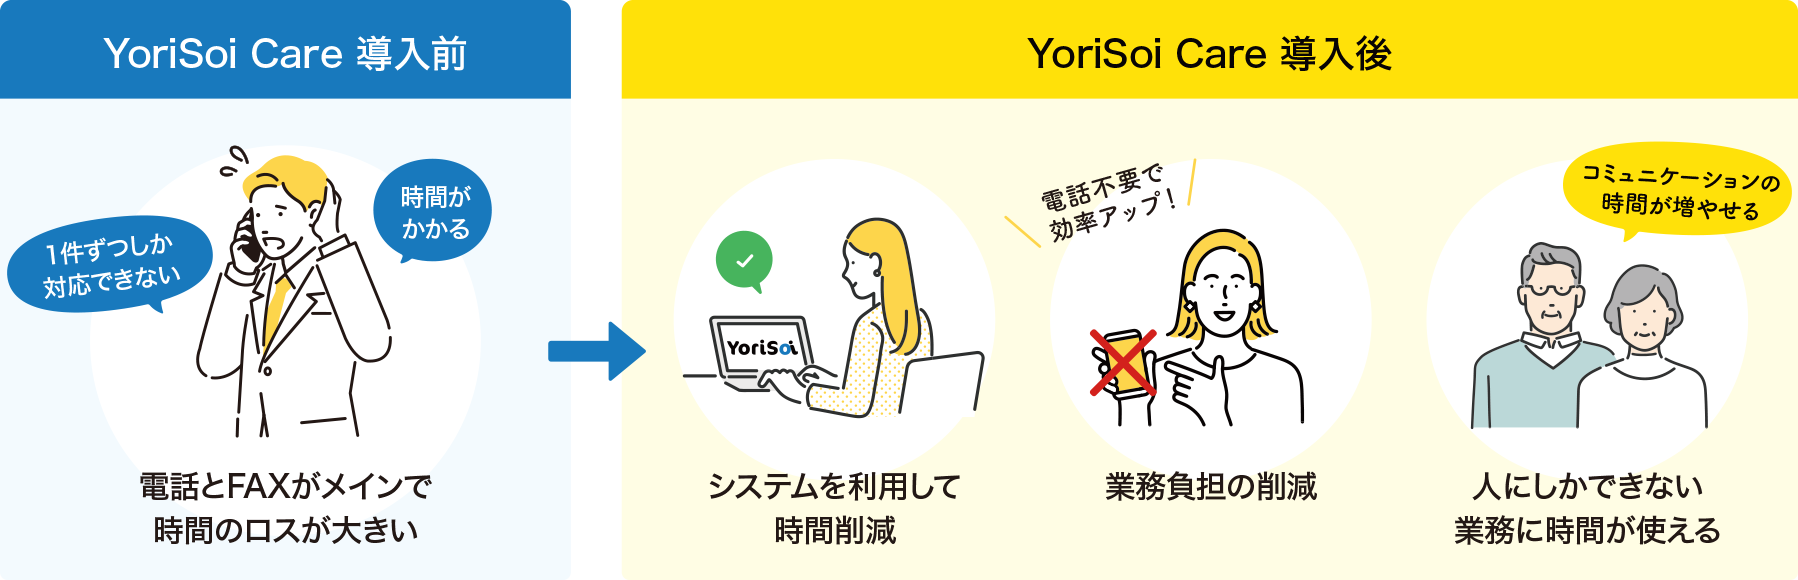 YoriSoi Care 導入前 → YoriSoi Care 導入後